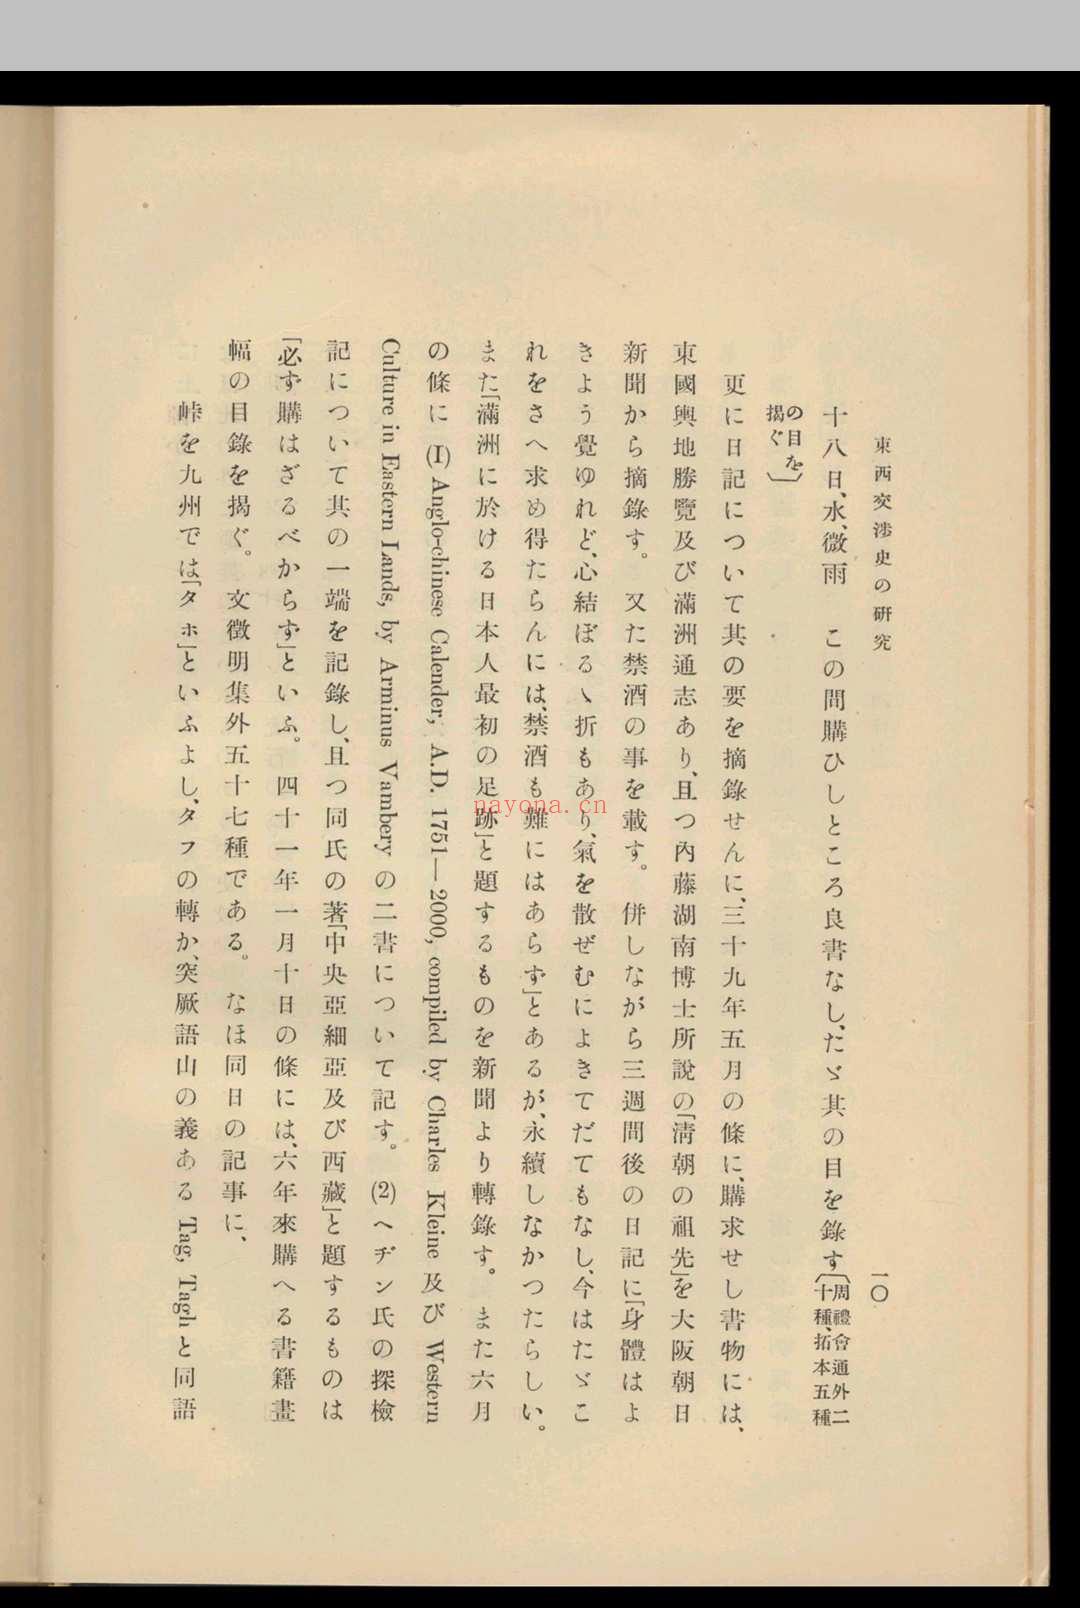 东西交涉史の研究  藤田豊八着  池内宏编. 1932